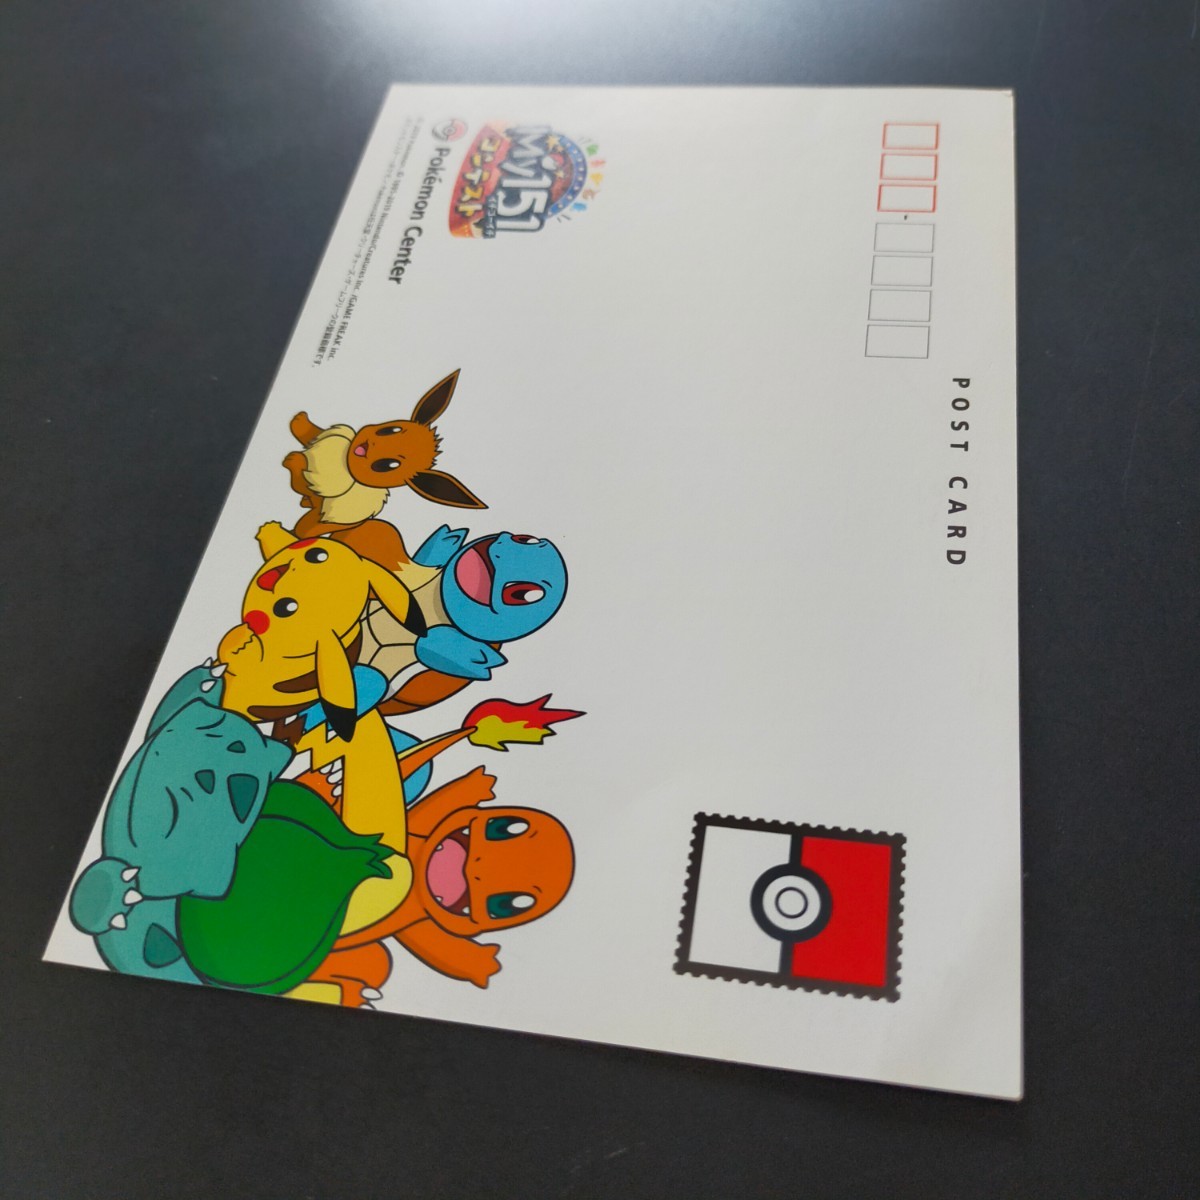 My151 ベロリンガ ポケモン センター ポストカード はがき 葉書 ハガキ / 回転寿司 カビゴン_画像9